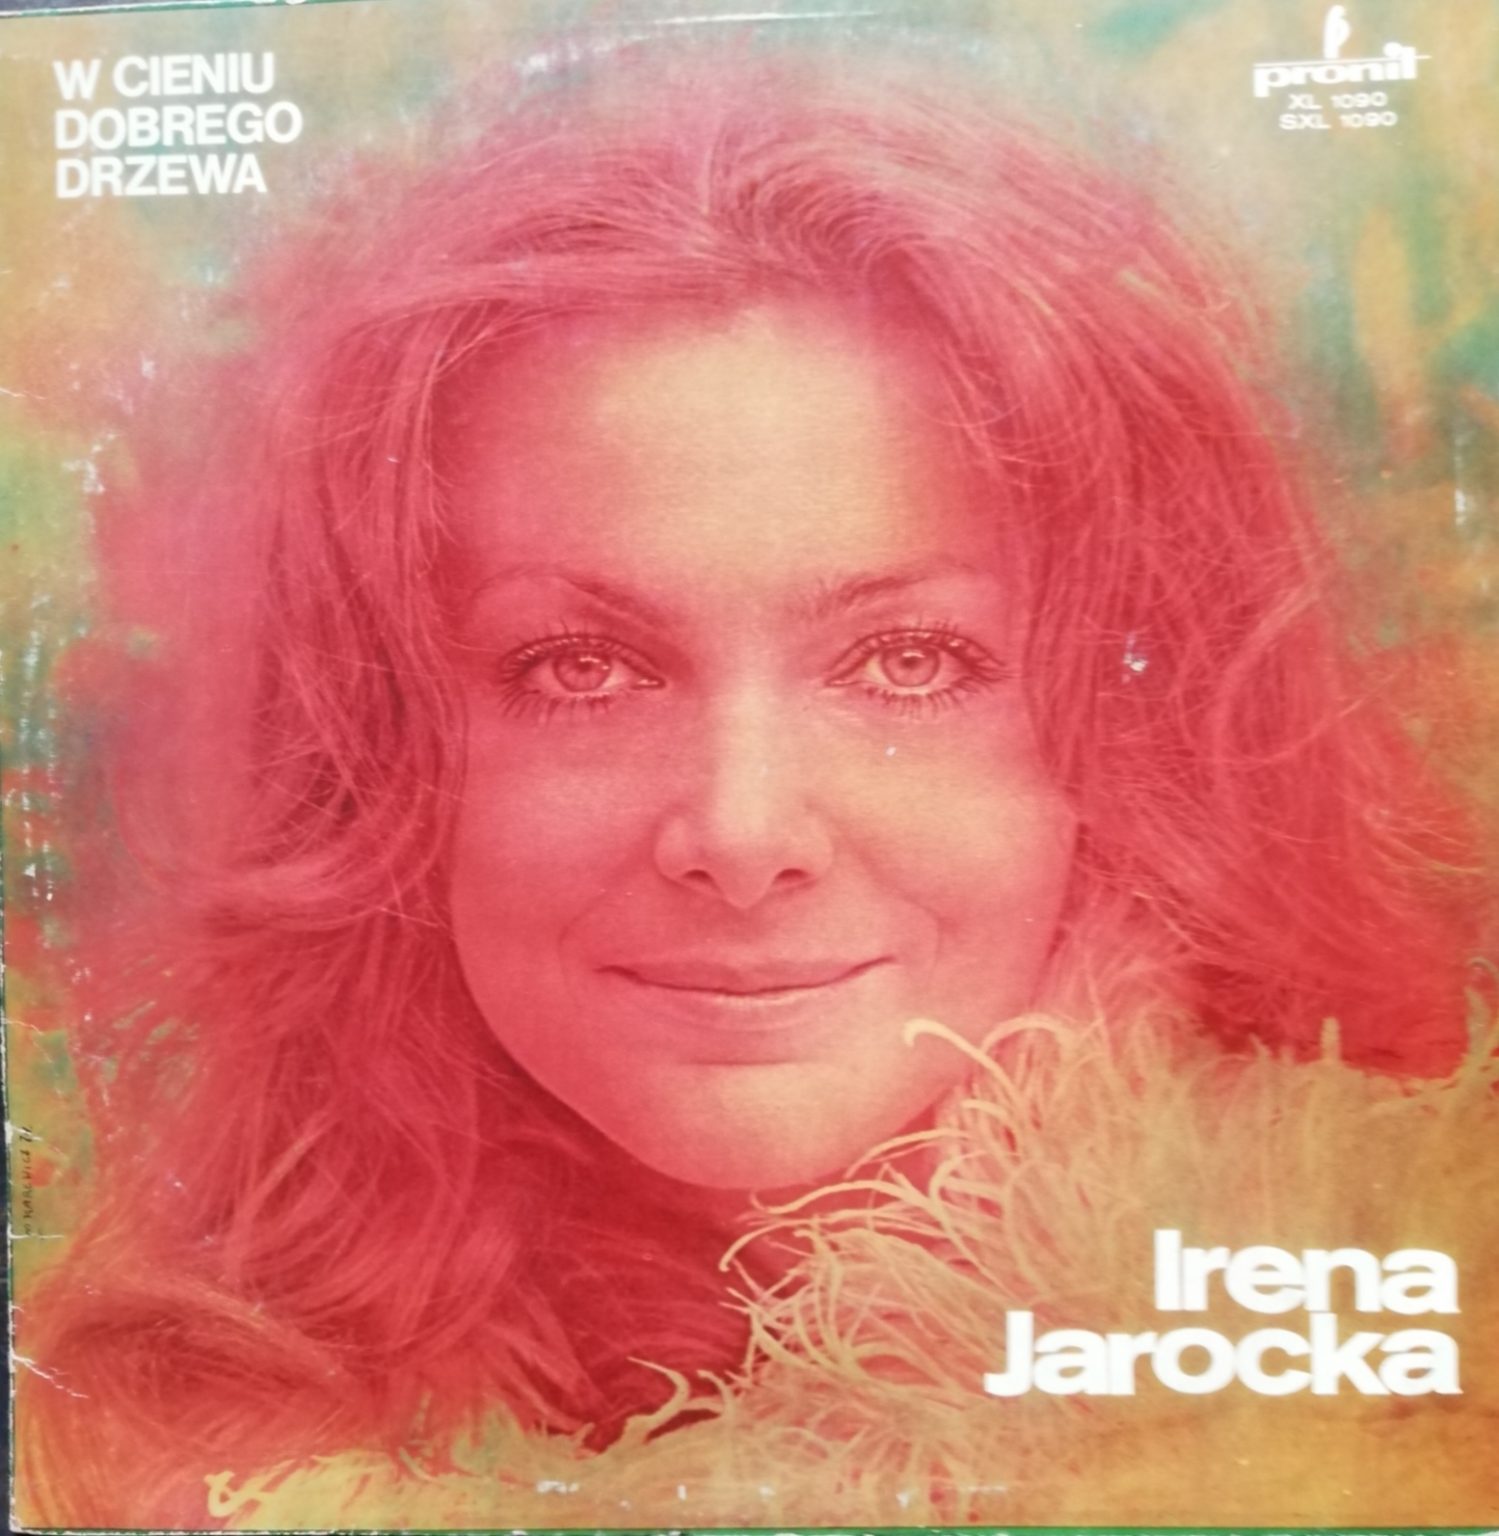 Irena Jarocka – W cieniu dobrego drzewa